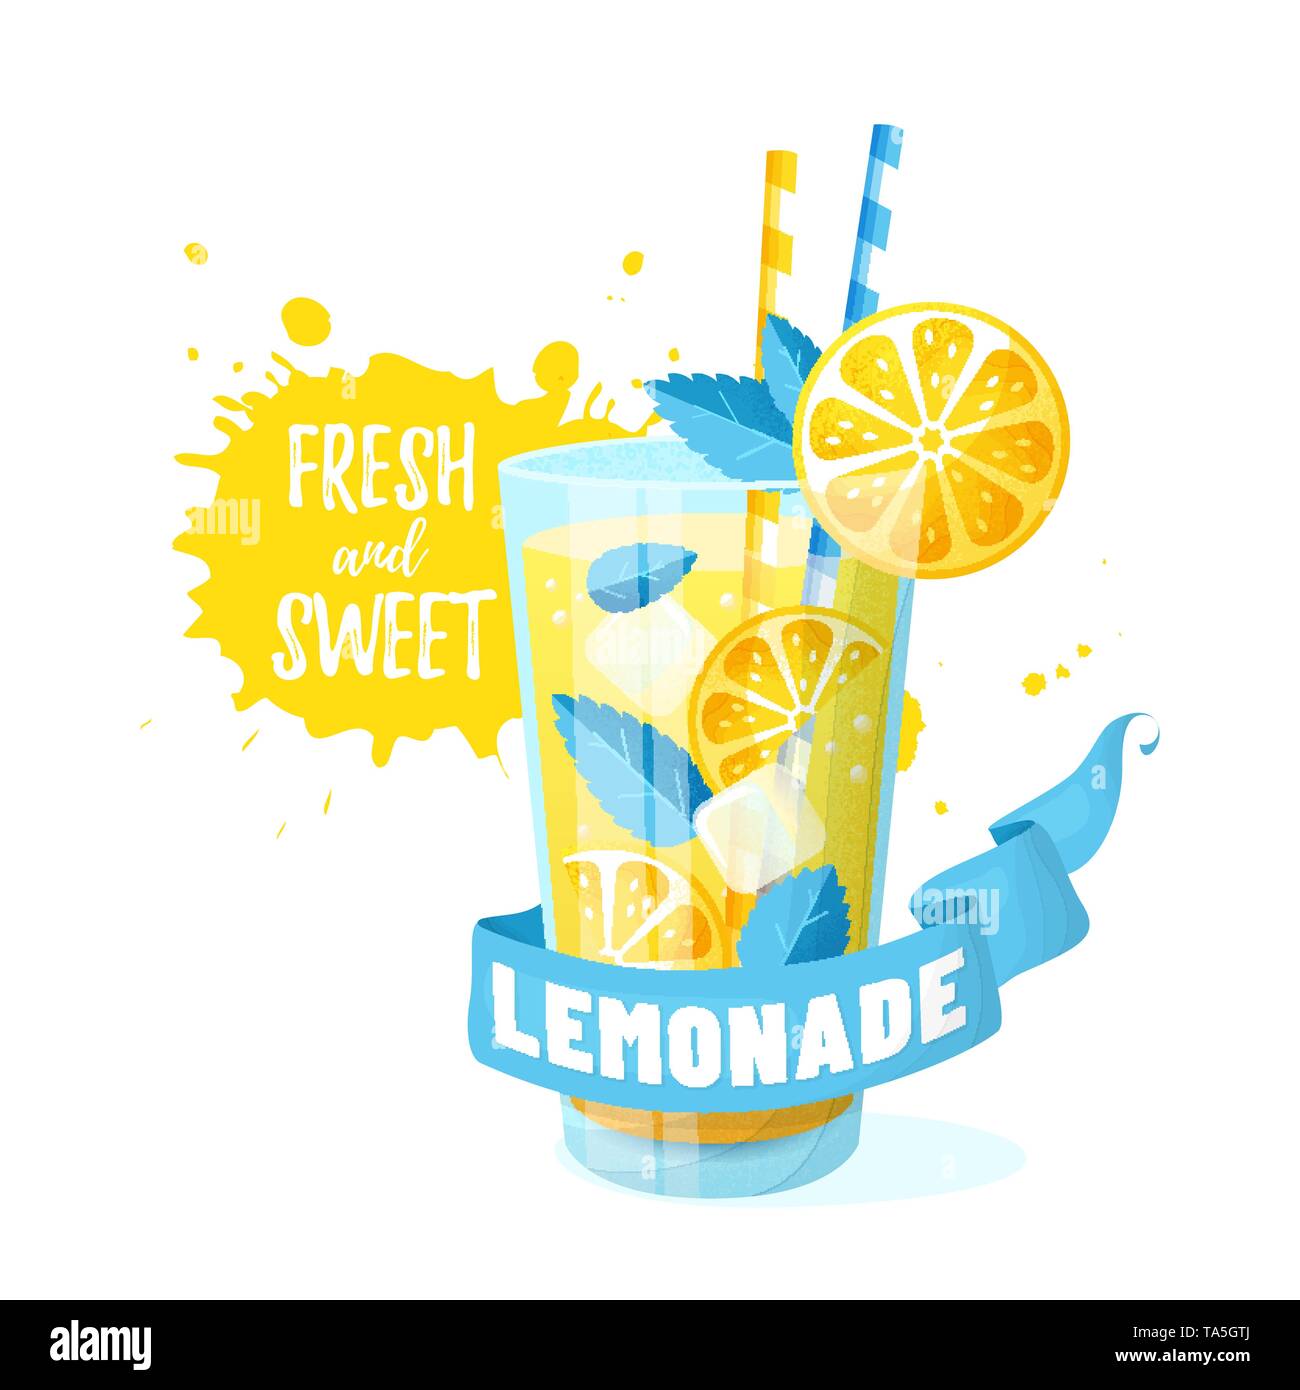 Lemonade Vektorgrafik. Modernes Banner mit Glas, Band und Saft Spritzer isoliert auf weißem Hintergrund. Frischer und süßer Sommerdrink mit Zitrone. Stock Vektor